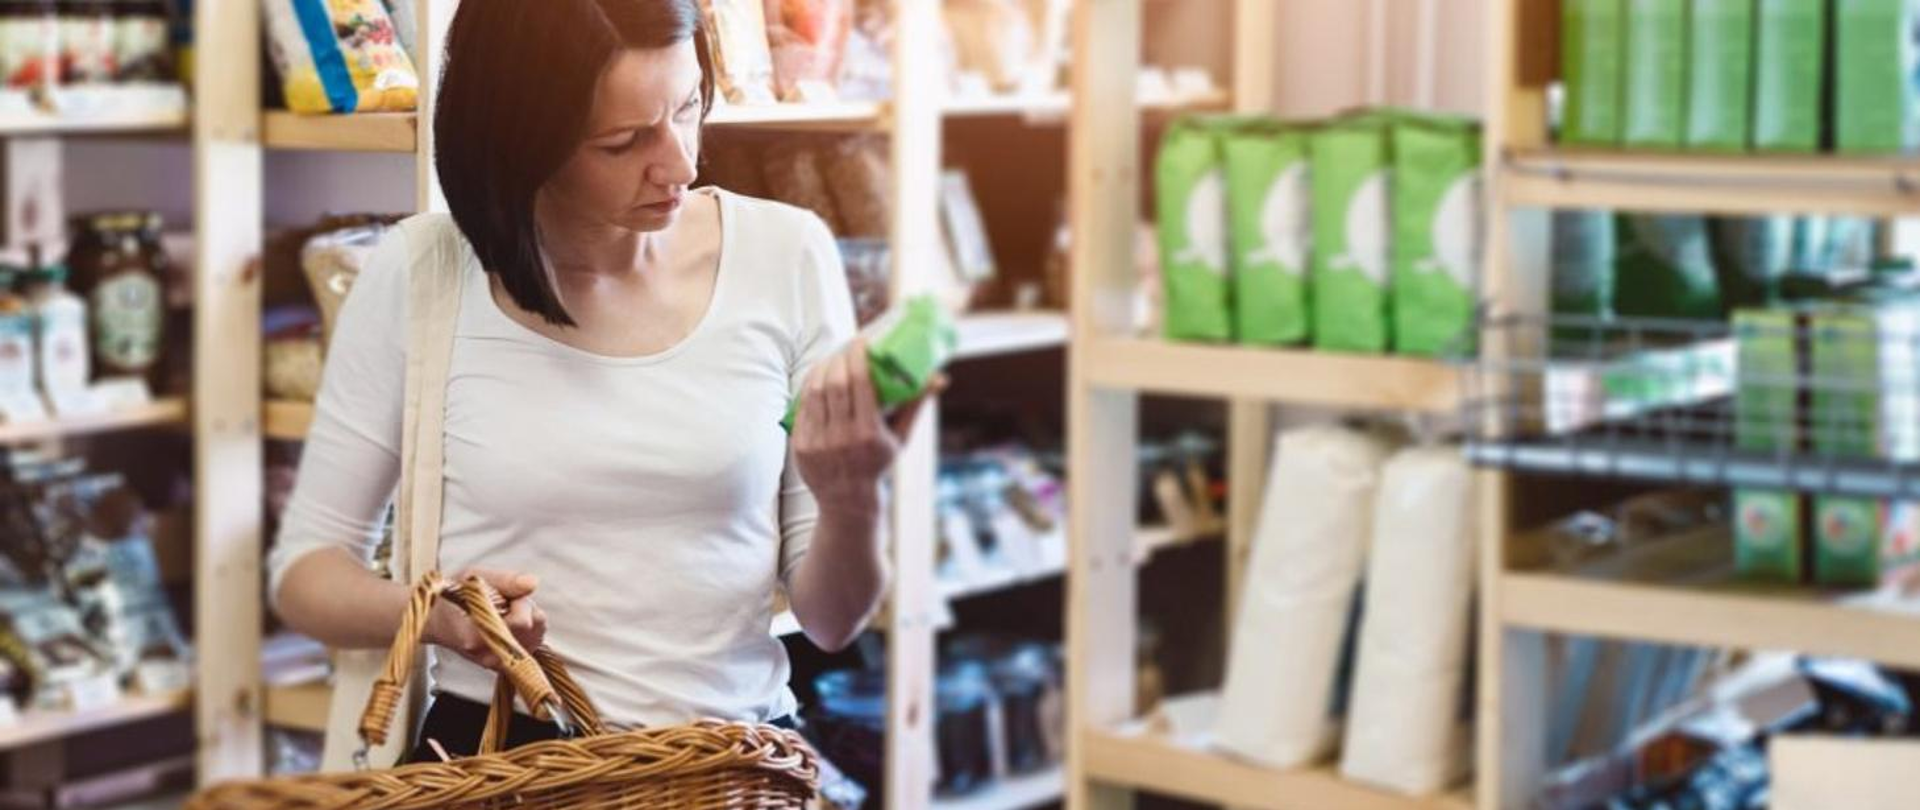 kobieta z koszem w sklepie pomiędzy pólkami ogląda produkt spożywczy